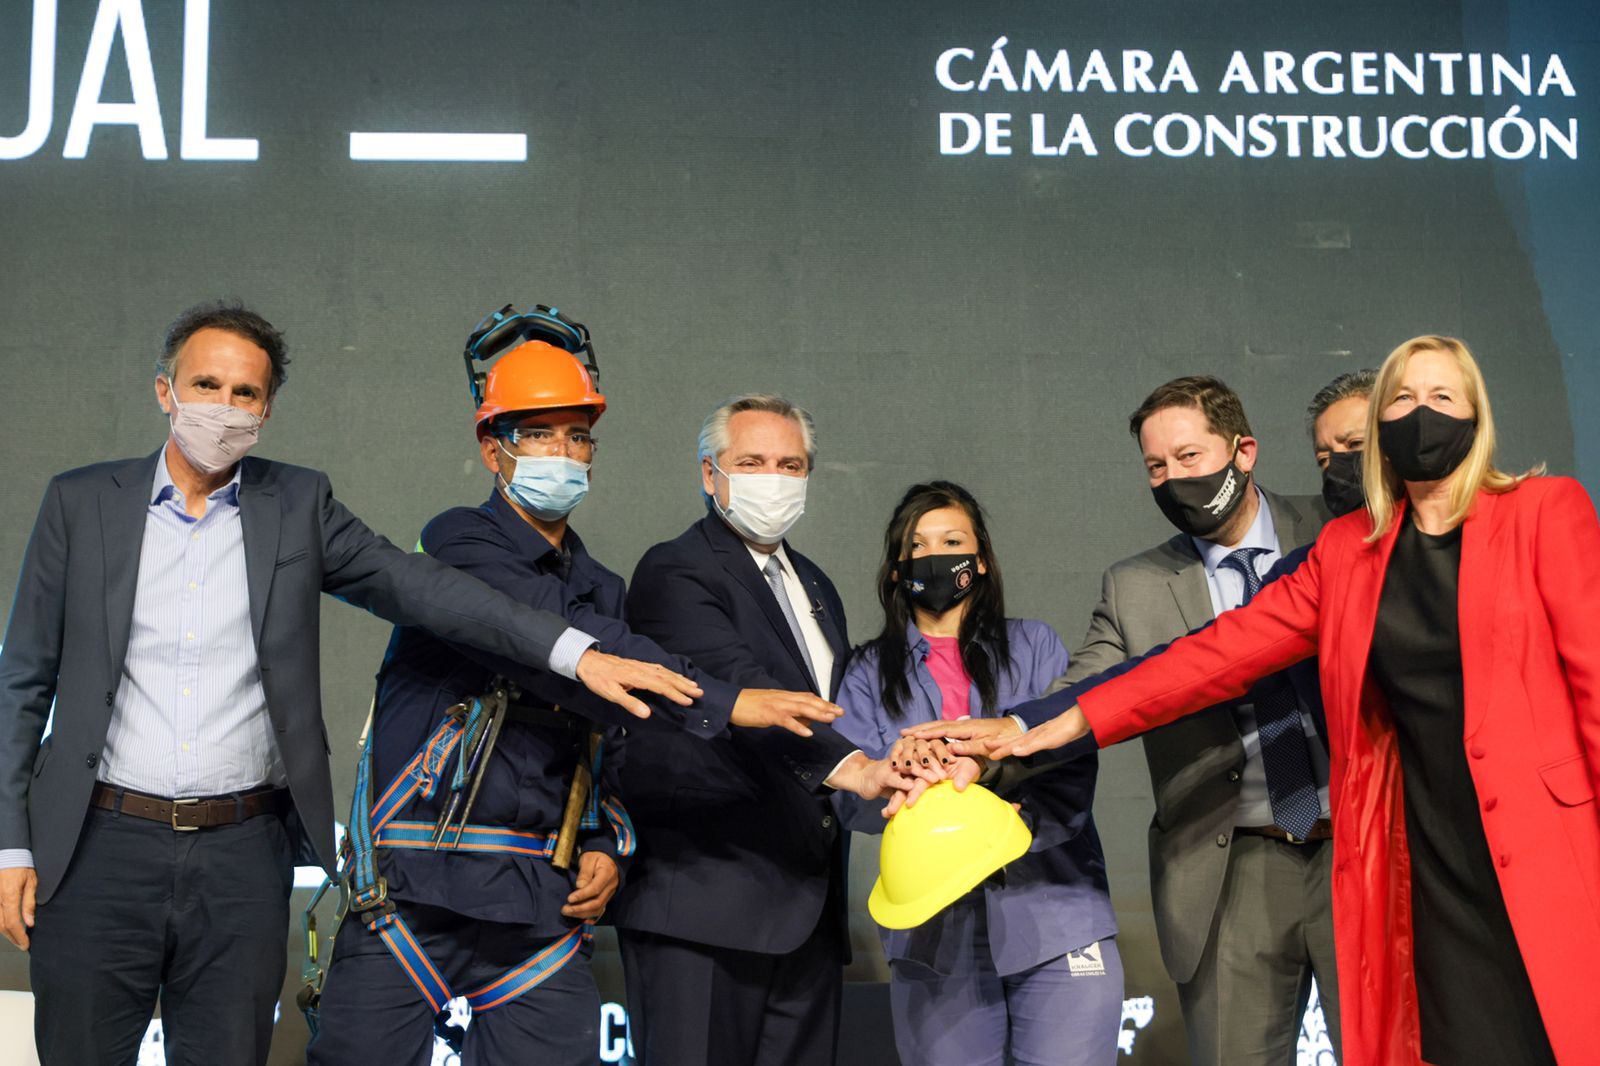 El presidente Alberto Fernández y el ministro de Obras Públicas, Gabriel Katopodis, posan con diversos representantes del sector de la construcción